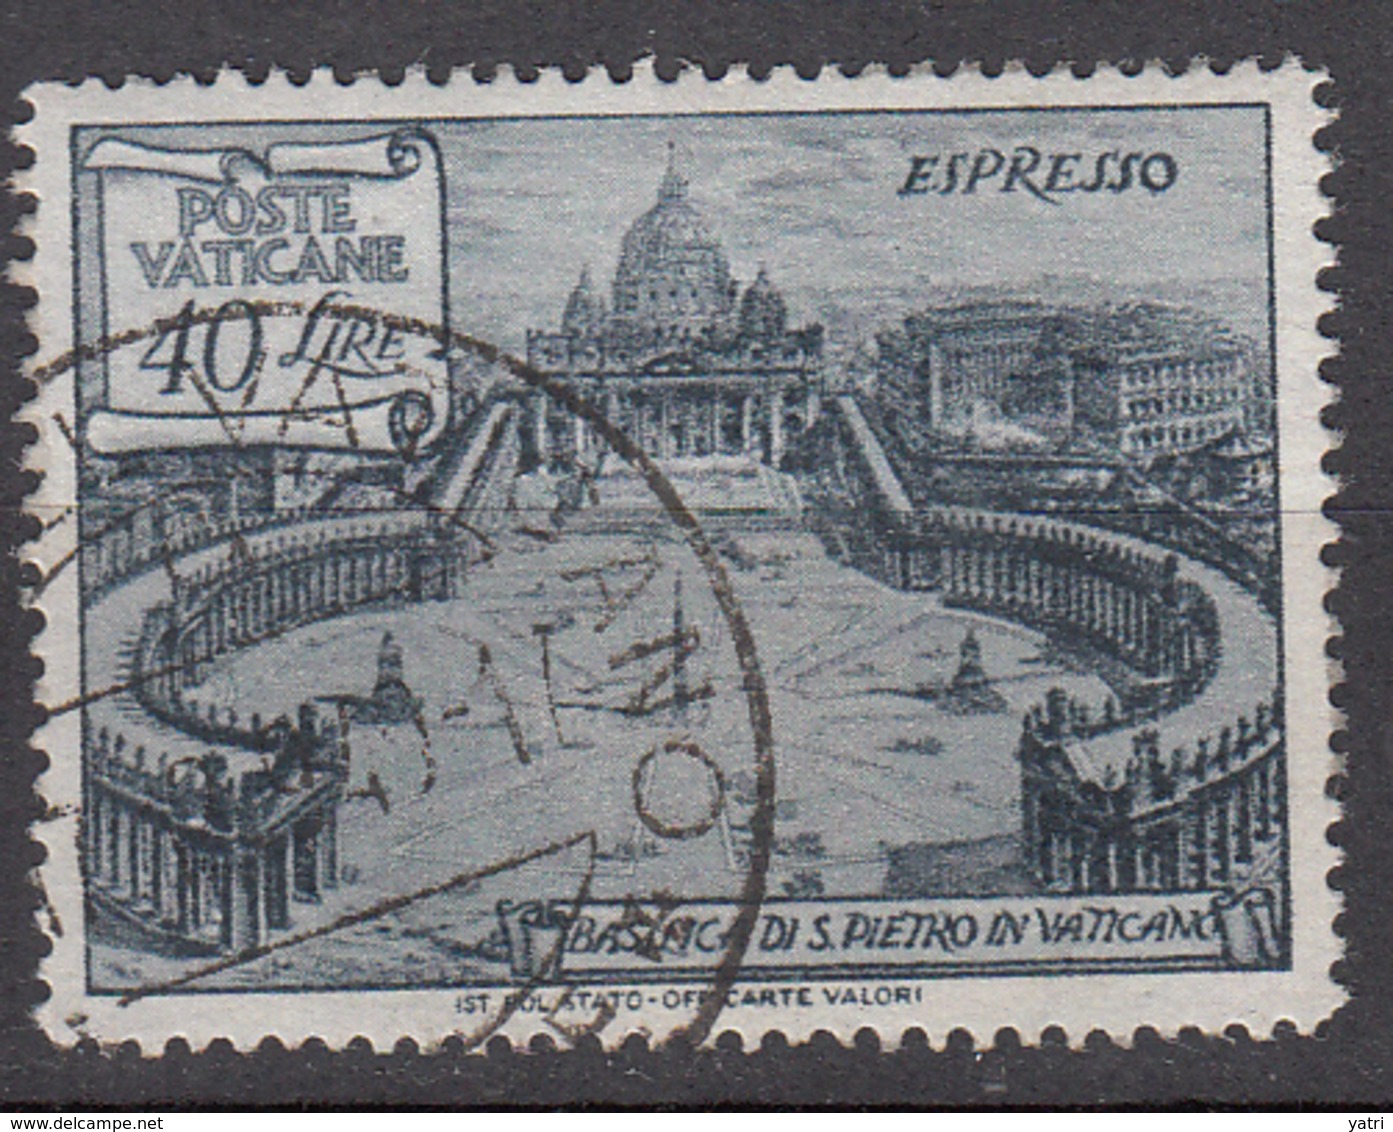 Vaticano - 1949 - Basiliche, Espresso 40 Lire - Priority Mail